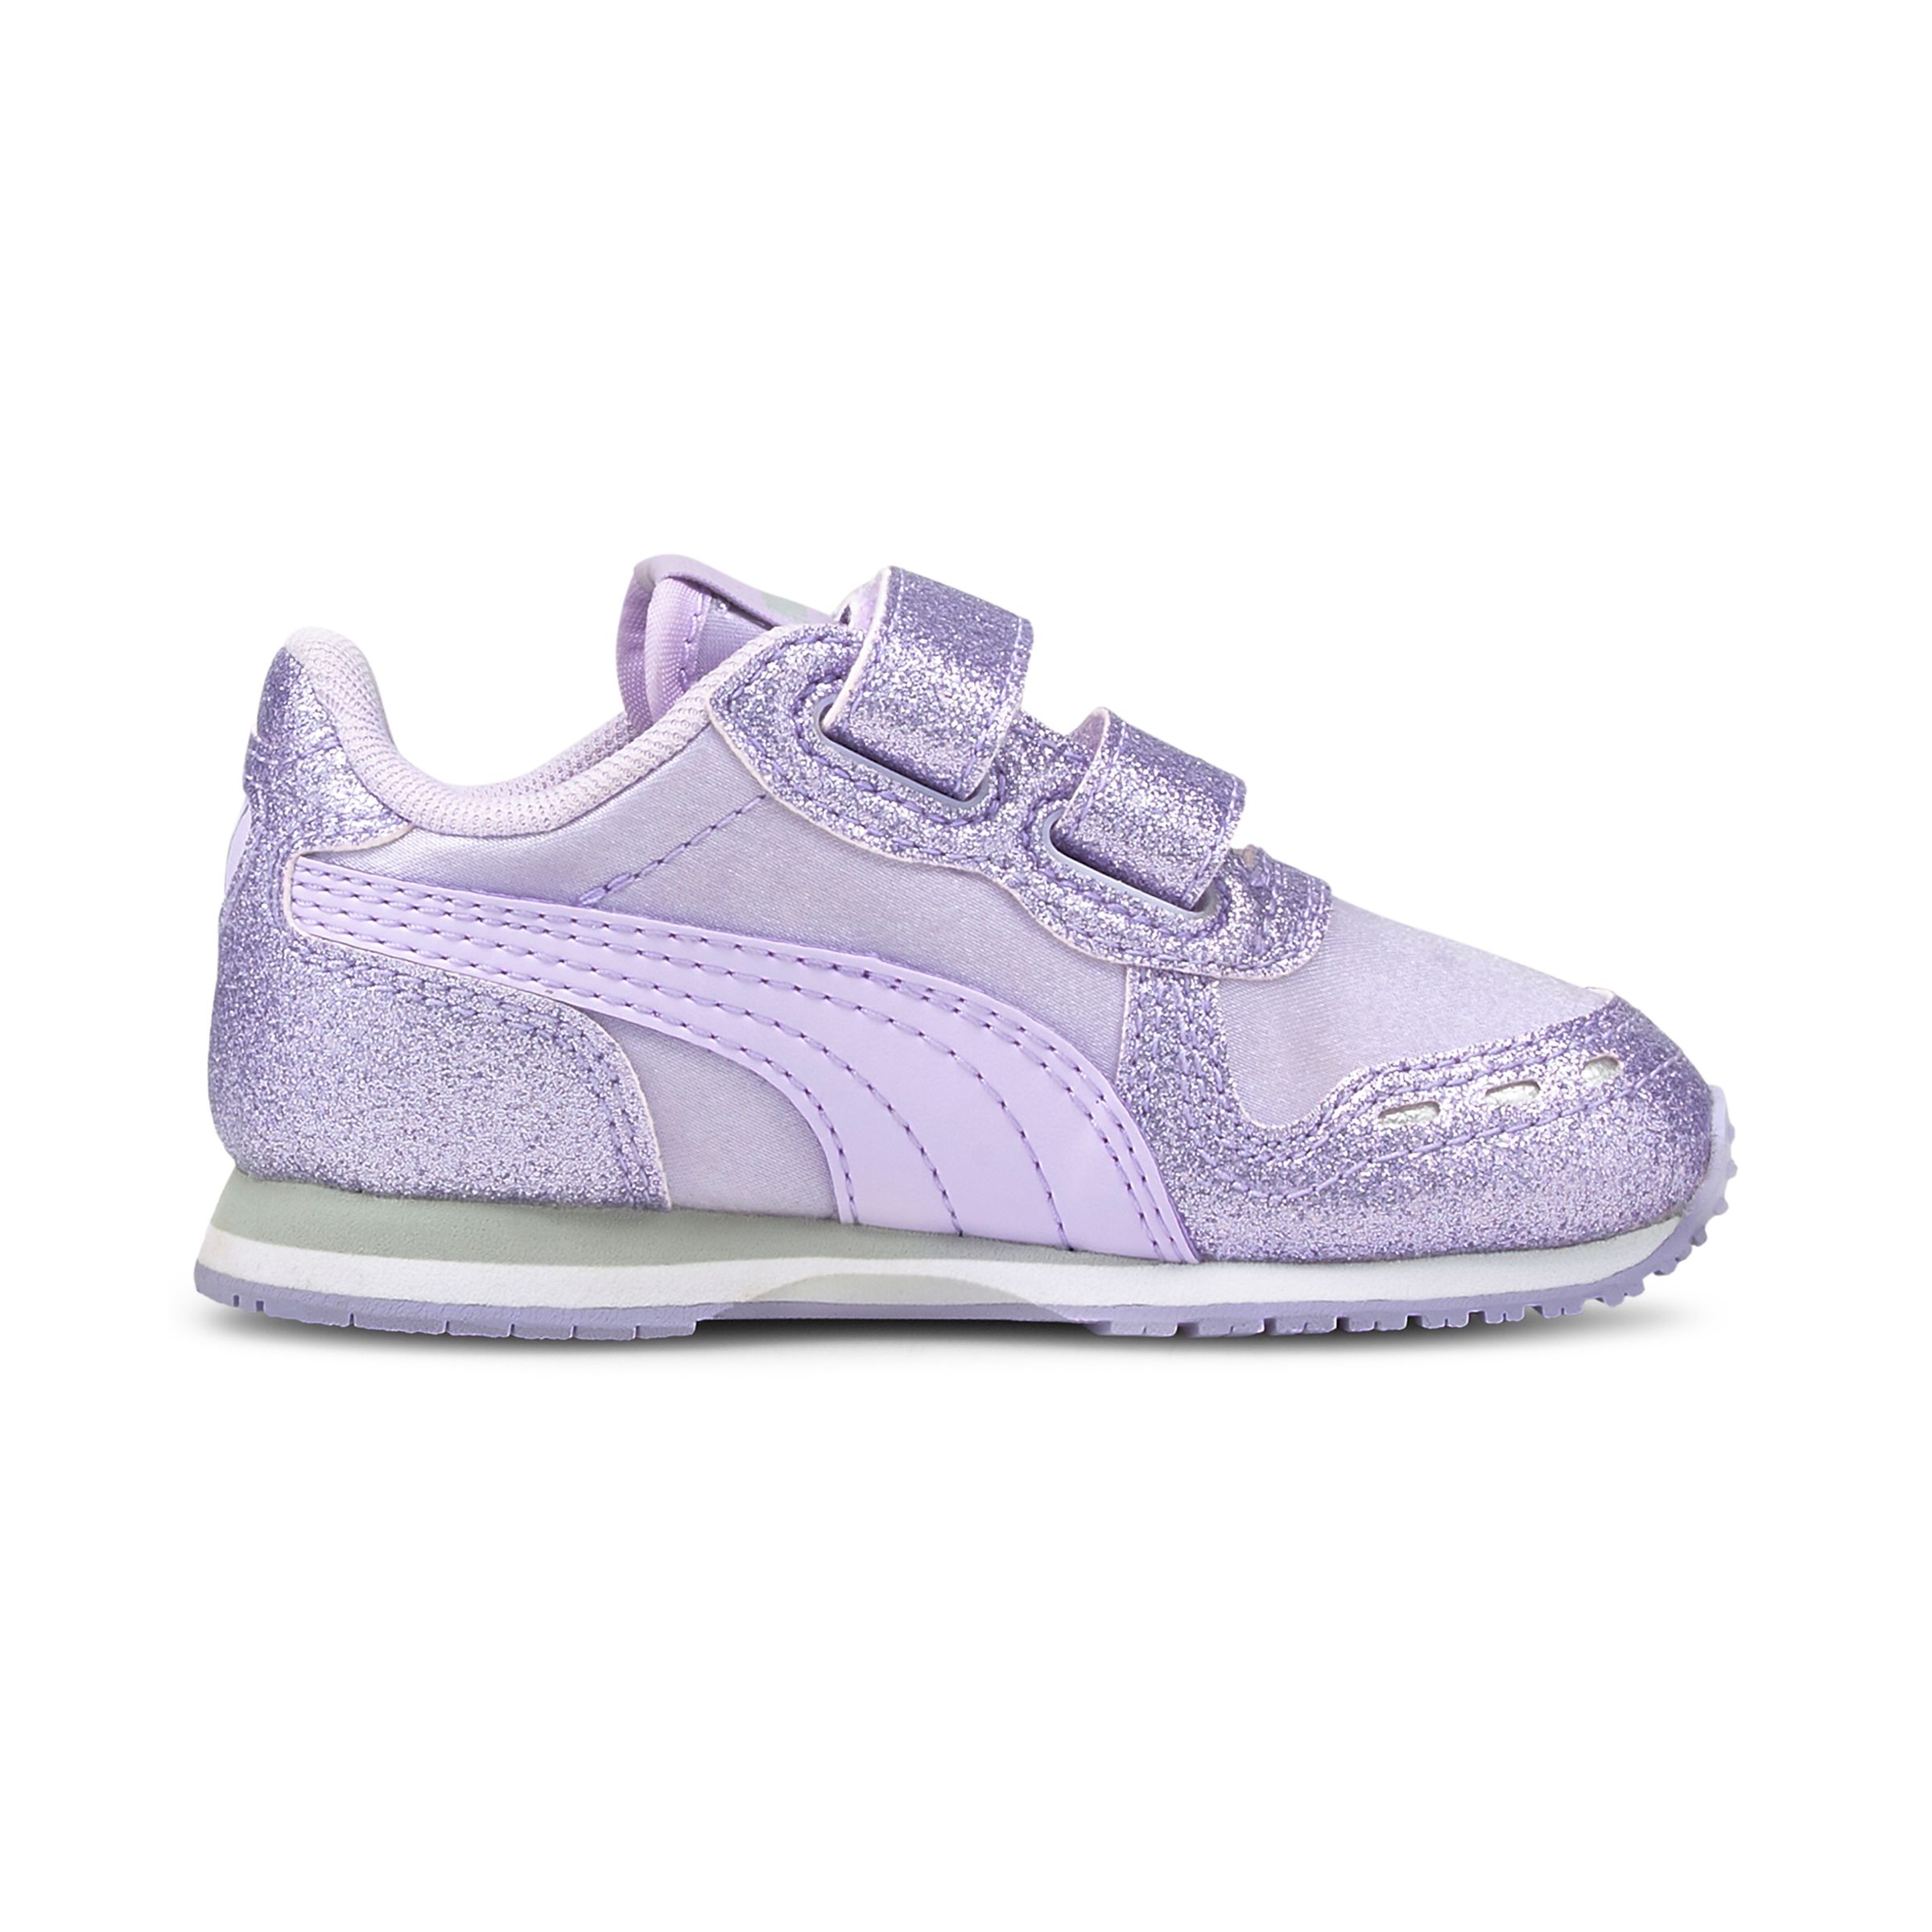 PUMA Cabana Racer Glitz V PS Inf Sneaker Schuhe Baby Mädchen 370986 violett